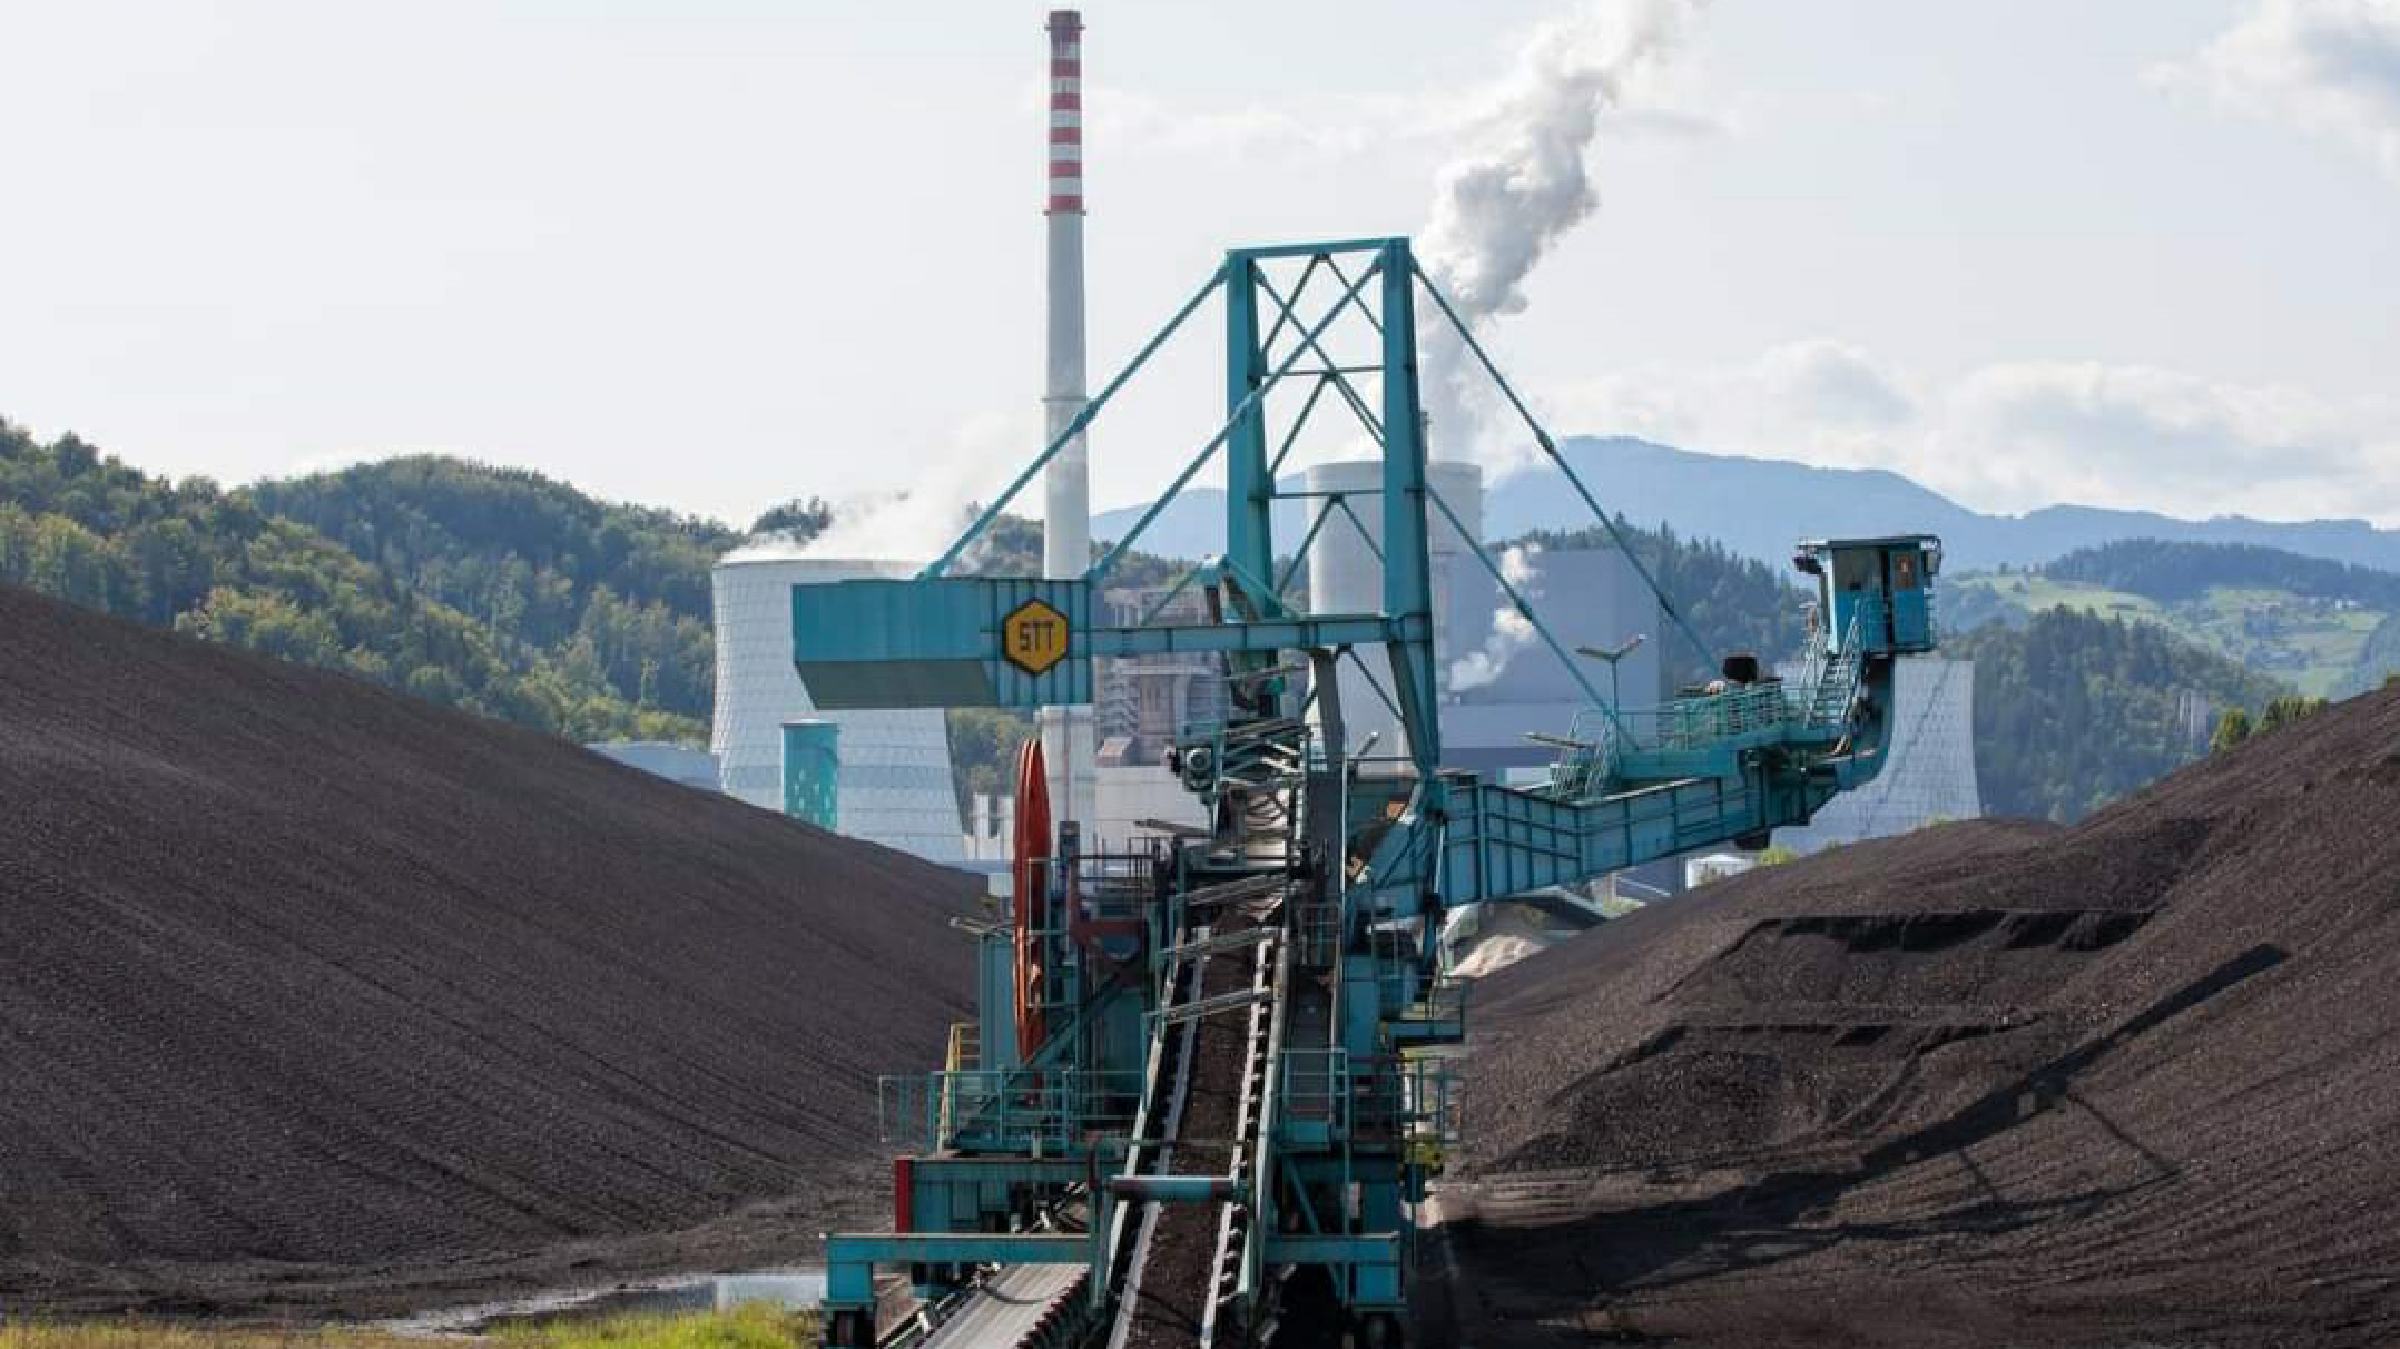 DNEVNA: Bomo morali zaradi omejenega izkopa v Premogovniku Velenje uvažati dražji premog?